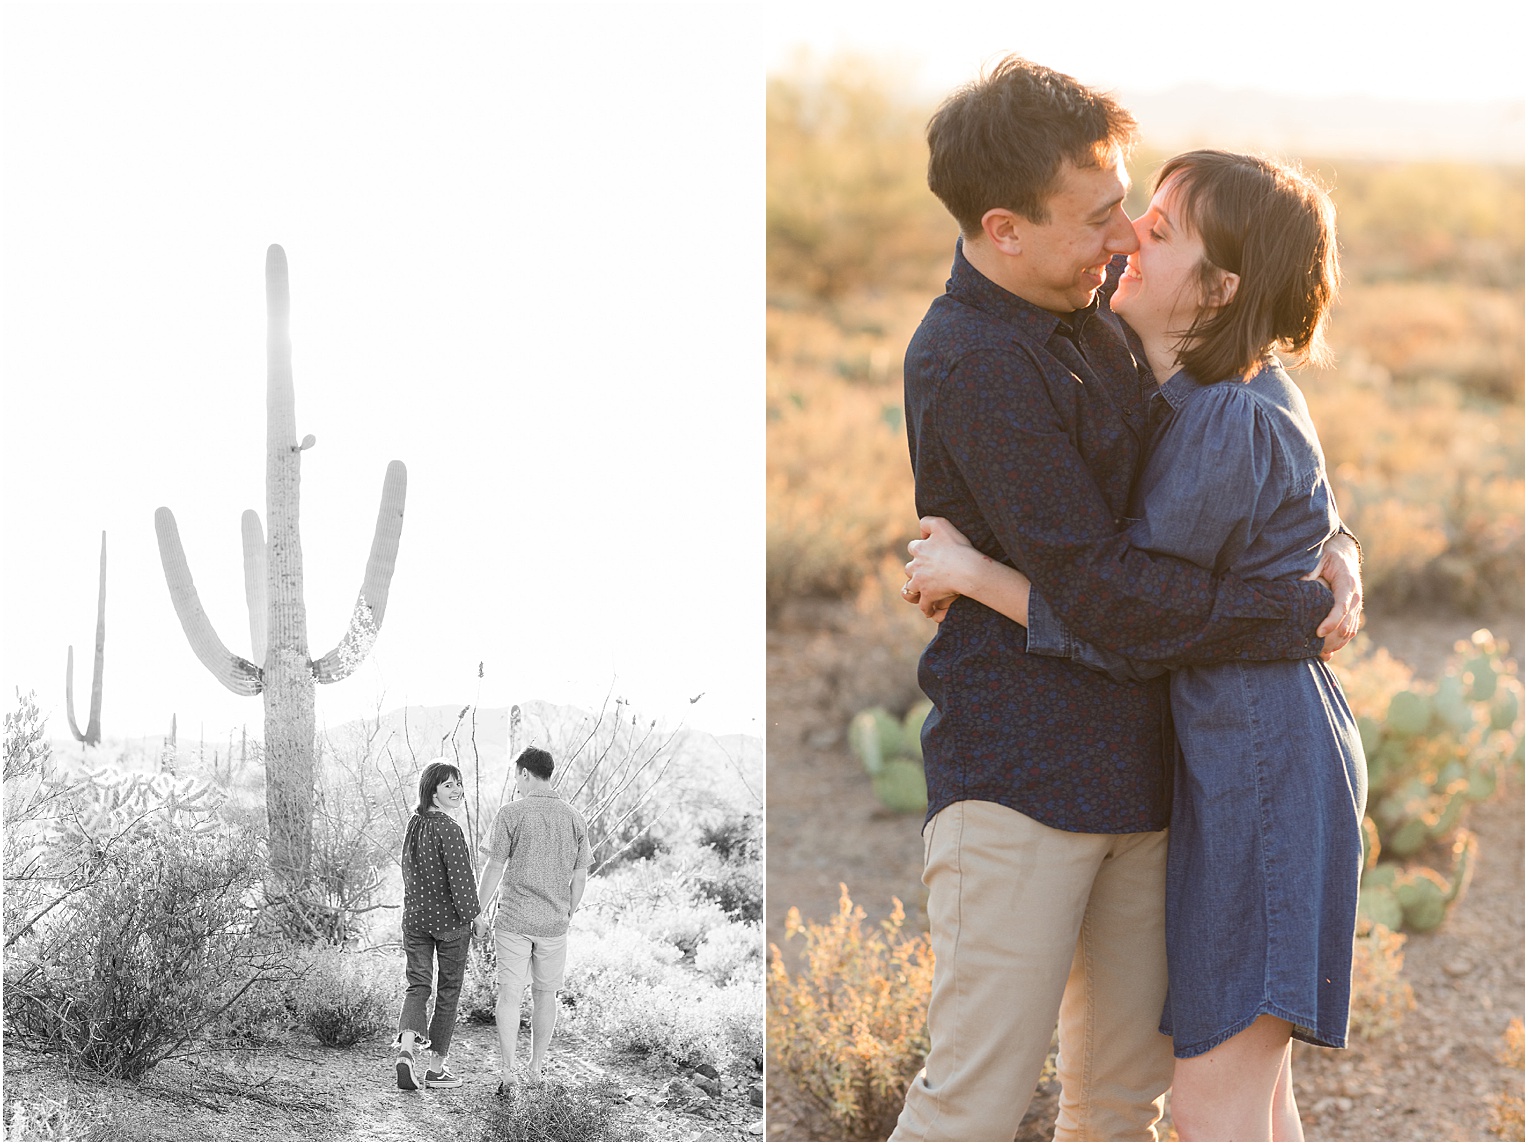 Arizona Engagement Pictures Tucson, AZ Jamie + Benji relaxed sunset engagement photos